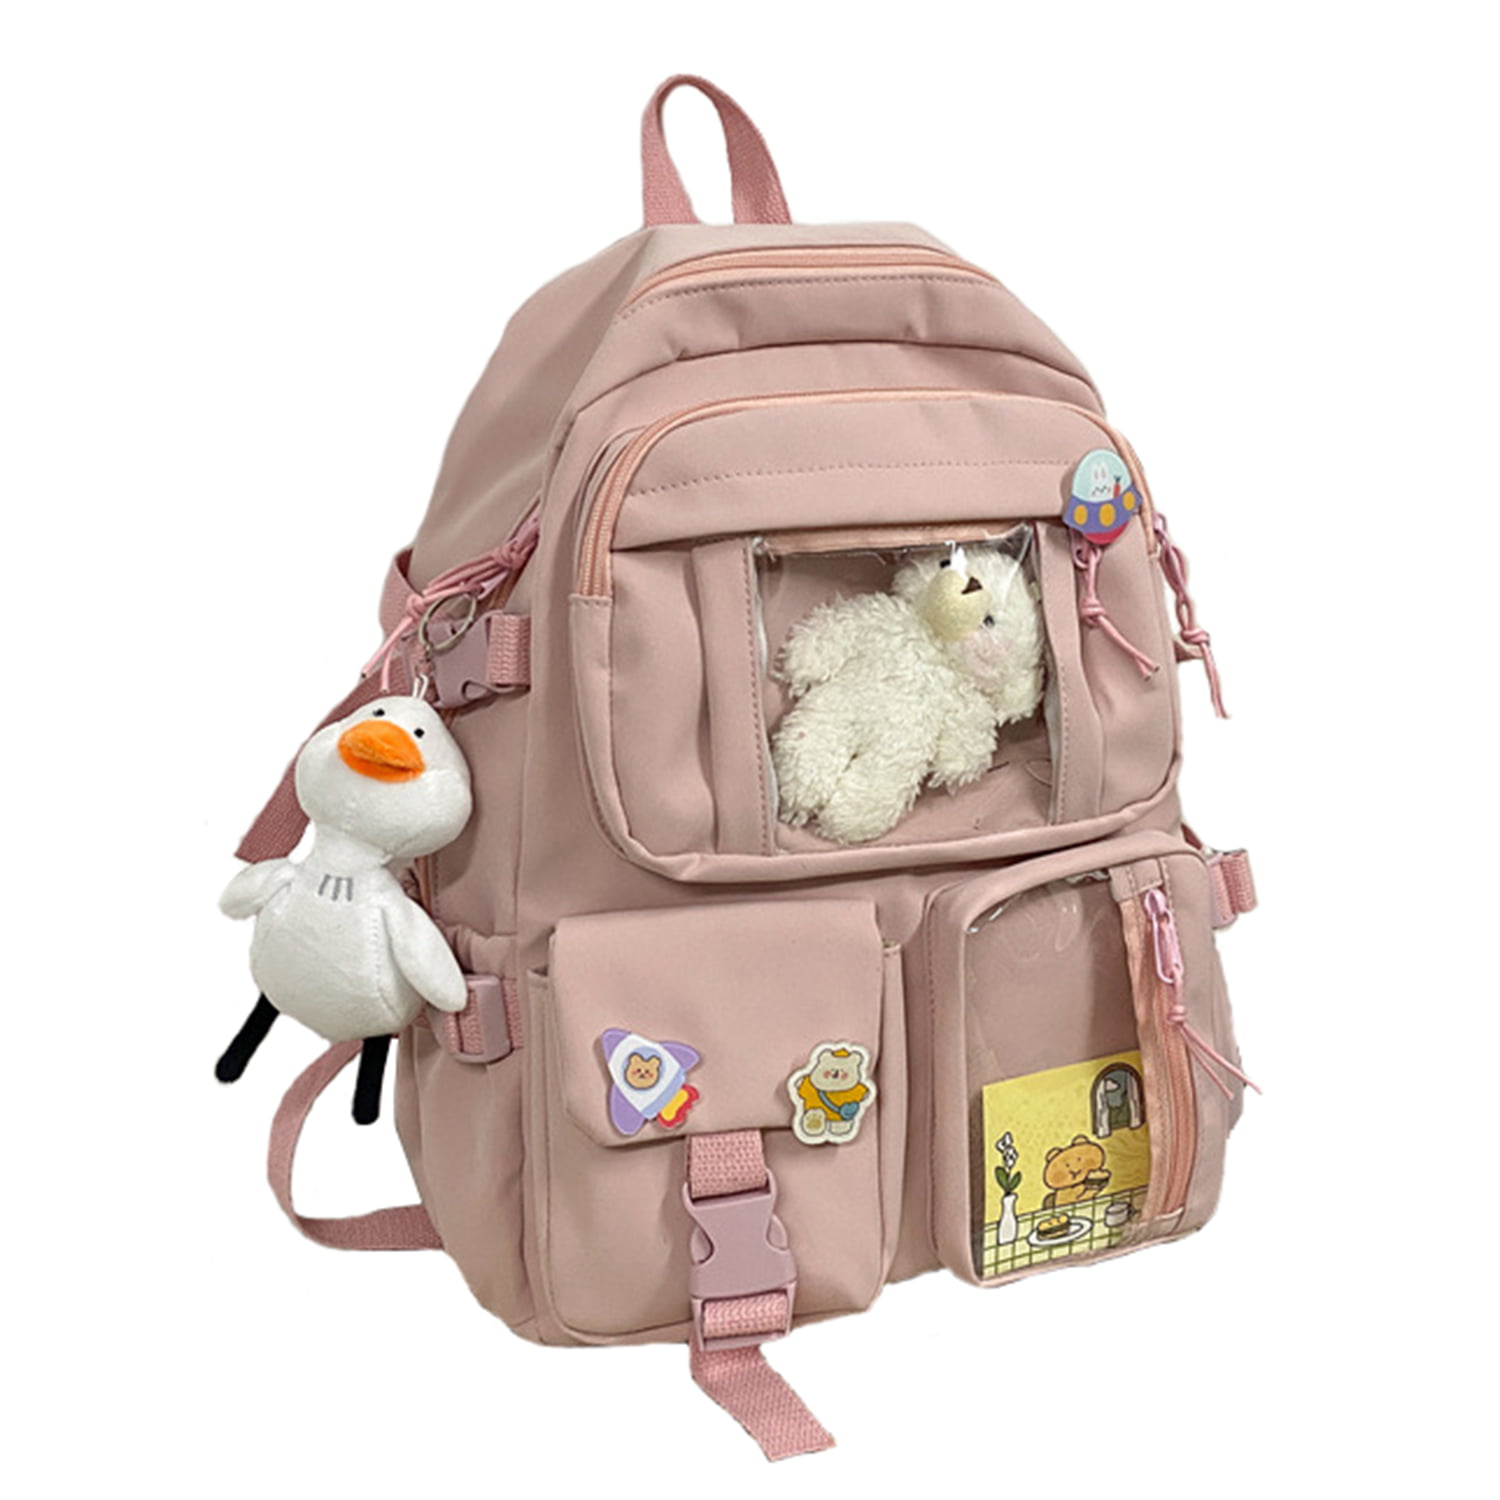 Kawai Backpack, with Kawai Pins Accessories, Lovely Kawai Teenager and ...